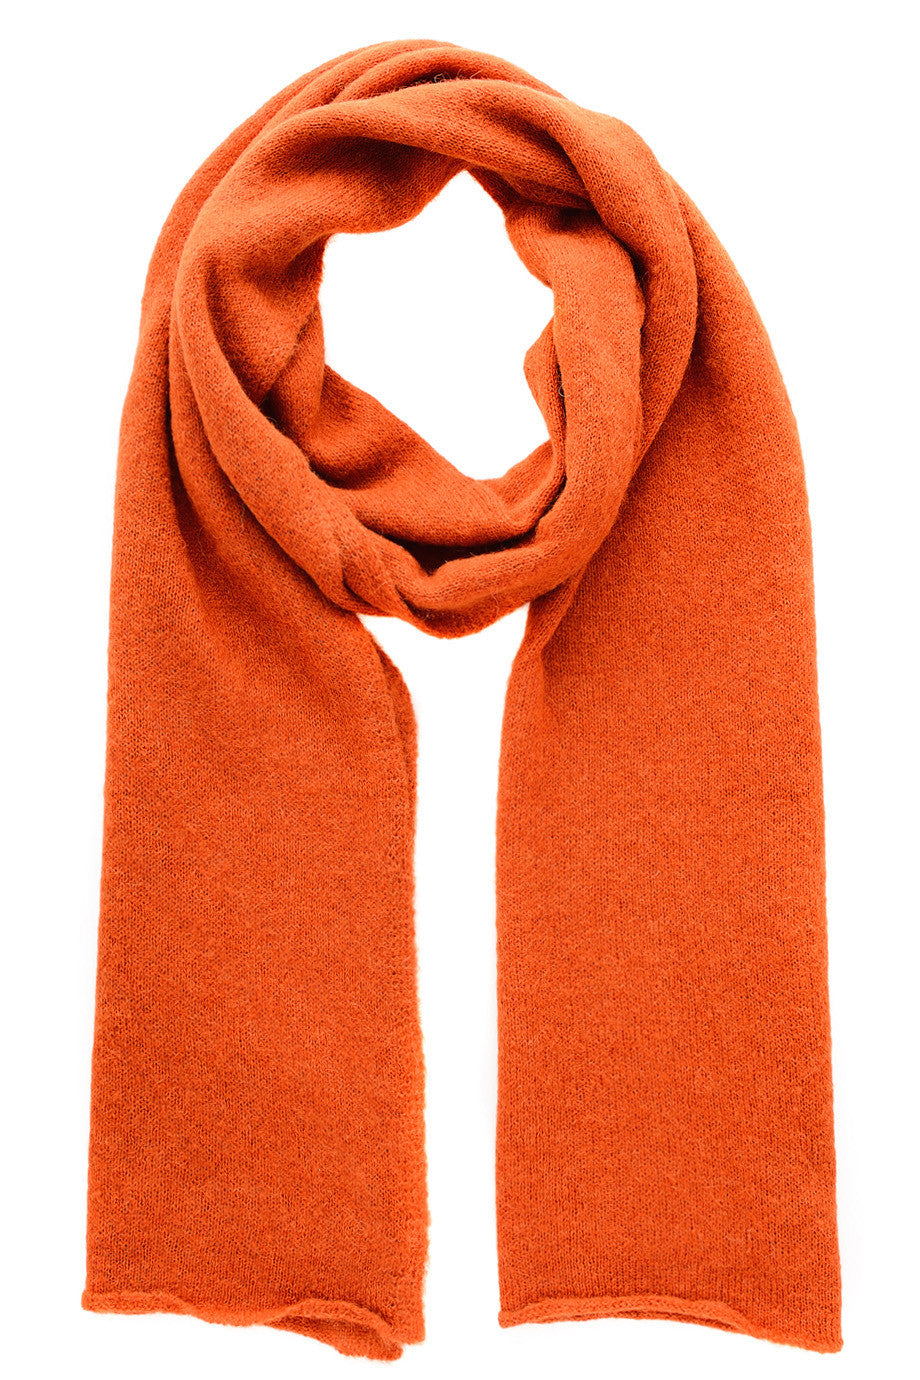 EVEREST oranje gebreide sjaal